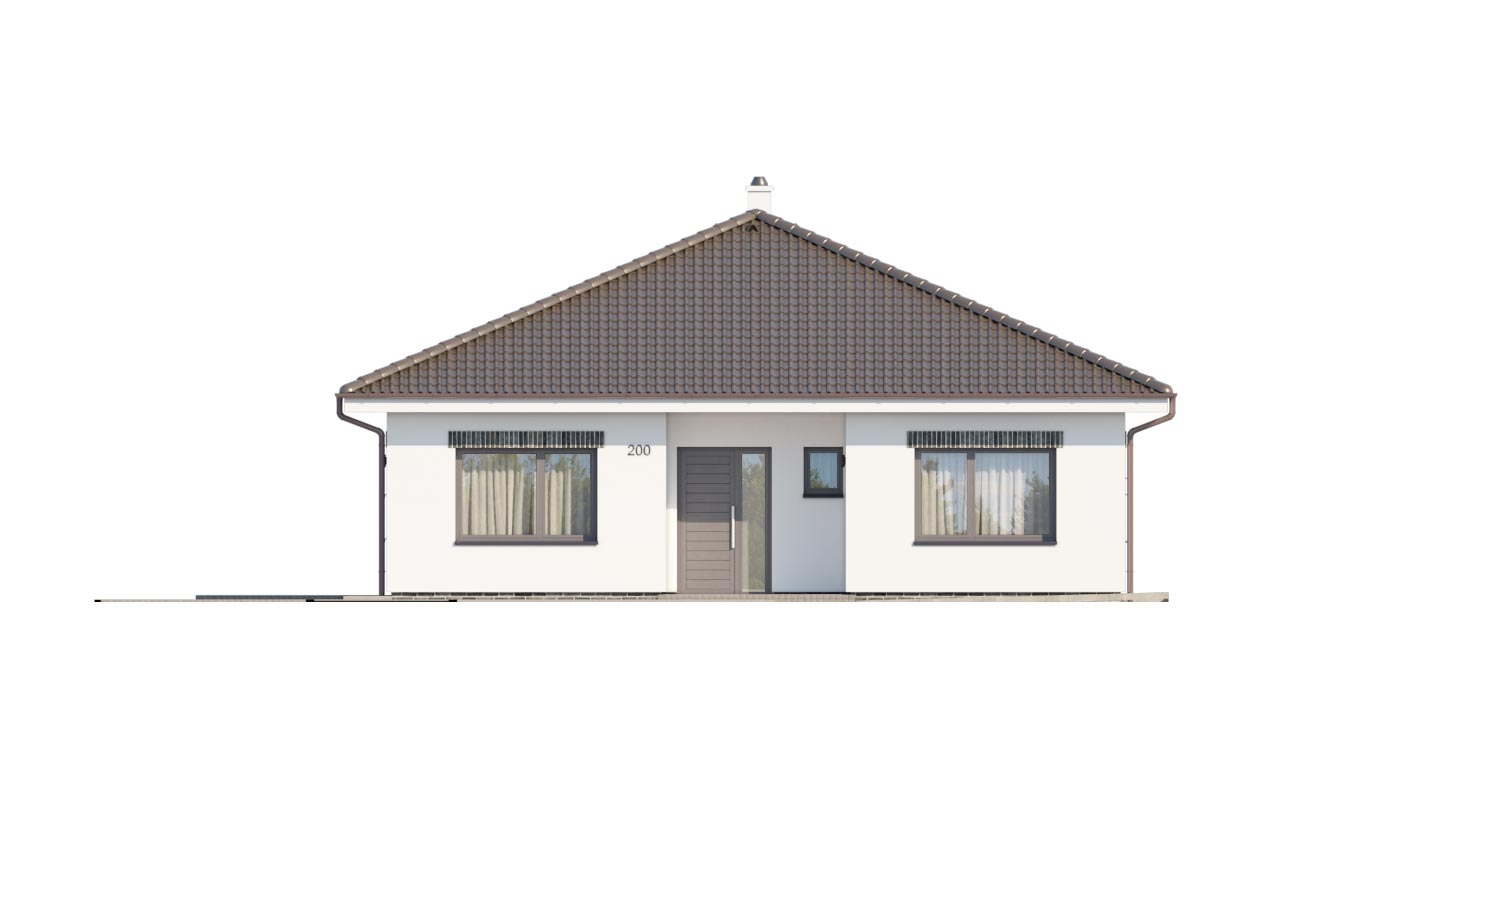 Zrkadlový pohľad 1. - Moderní projekt rodinného domu s valbovou střechou. Novinka 2019. Menší pokoj je vhodná jako pracovna nebo šatník.